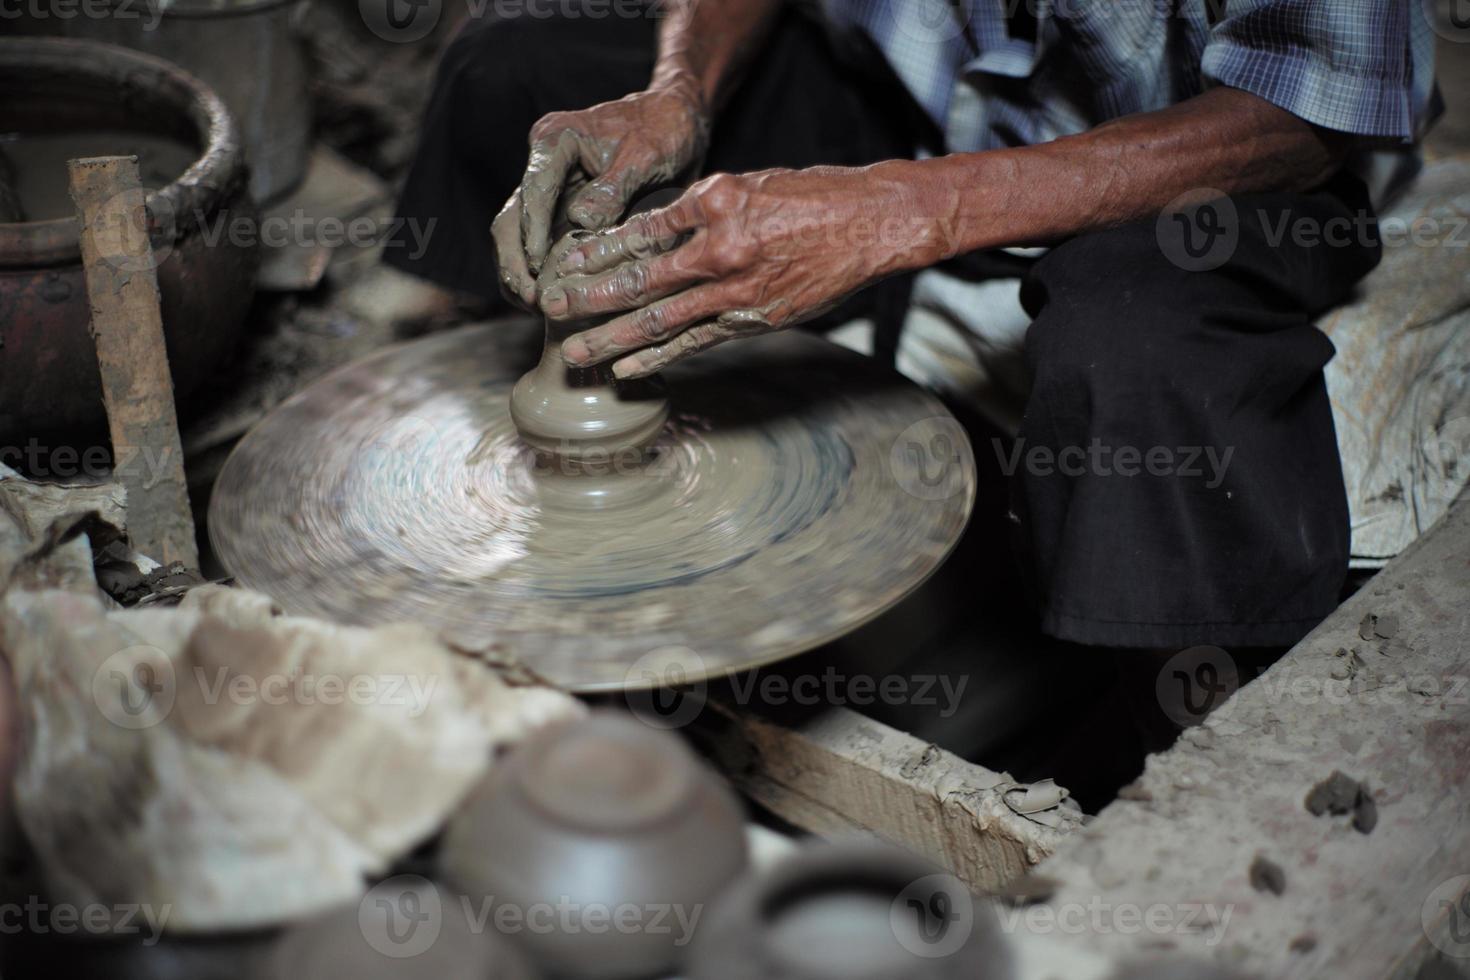 selektivt fokuserat på den smutsiga skrynkliga huden, händerna på en gammal man som formar leran arbetar på snurrhjulet för att göra burken med suddig grupp av lerburkar i förgrunden foto